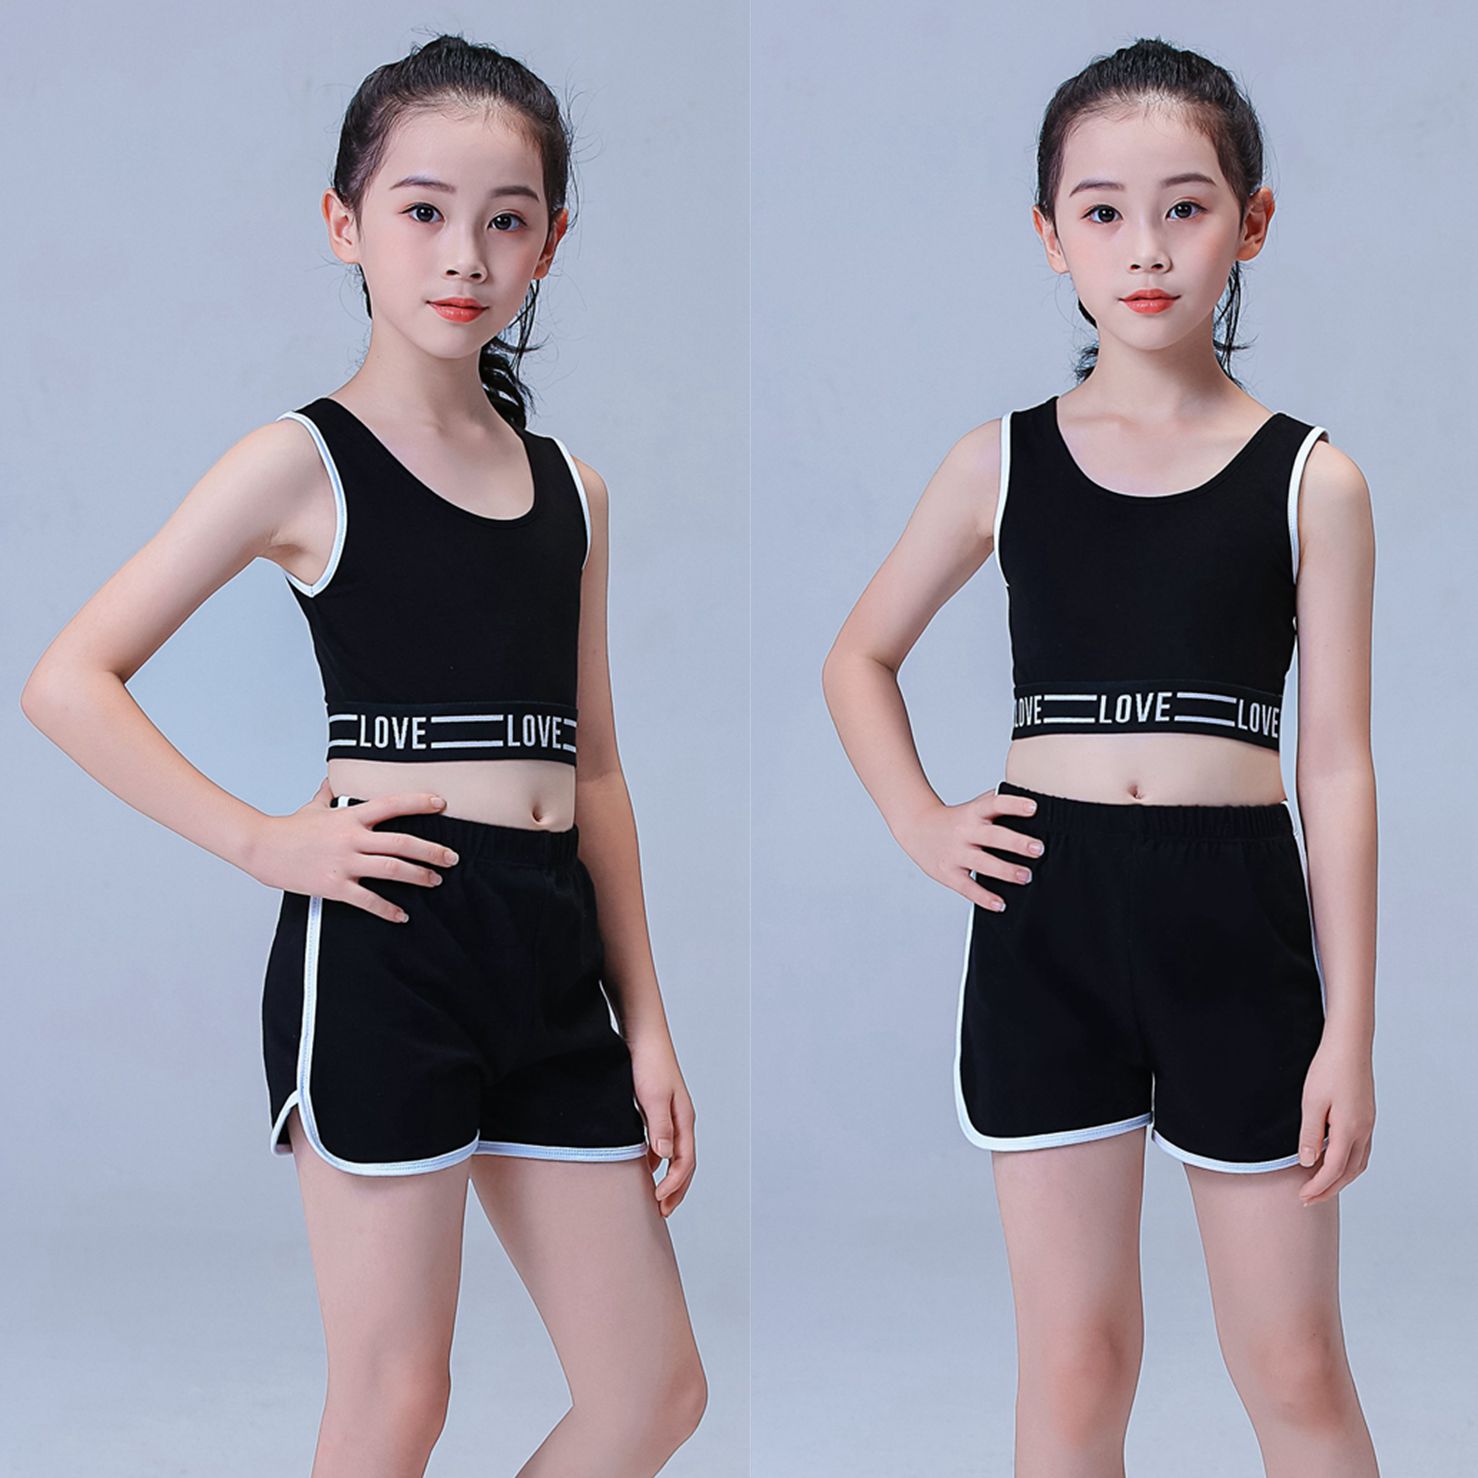 少儿模特训练服装儿童形体礼仪练功服女童夏季套装T台走秀演出服